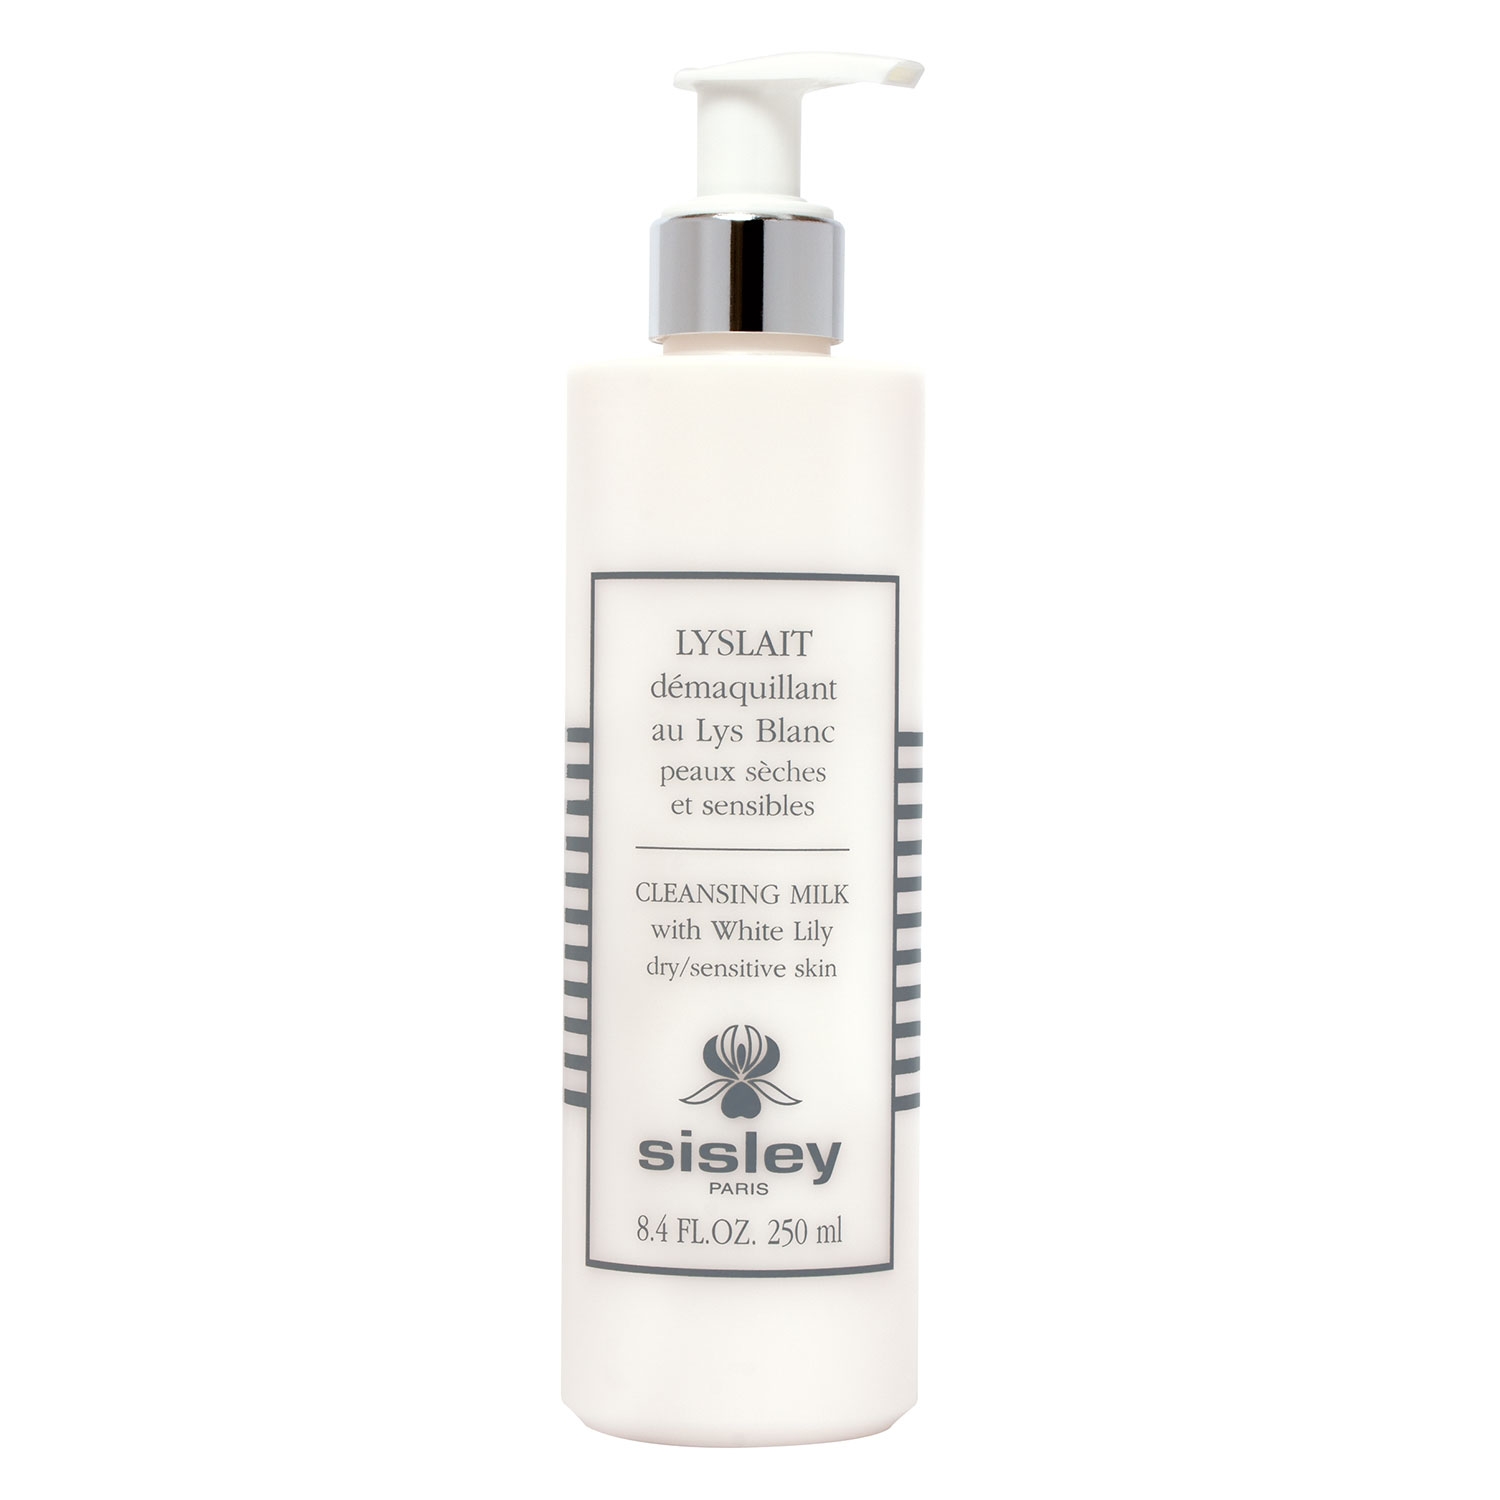 Produktbild von Sisley Skincare - Lyslait Démaquillant au Lys Blanc